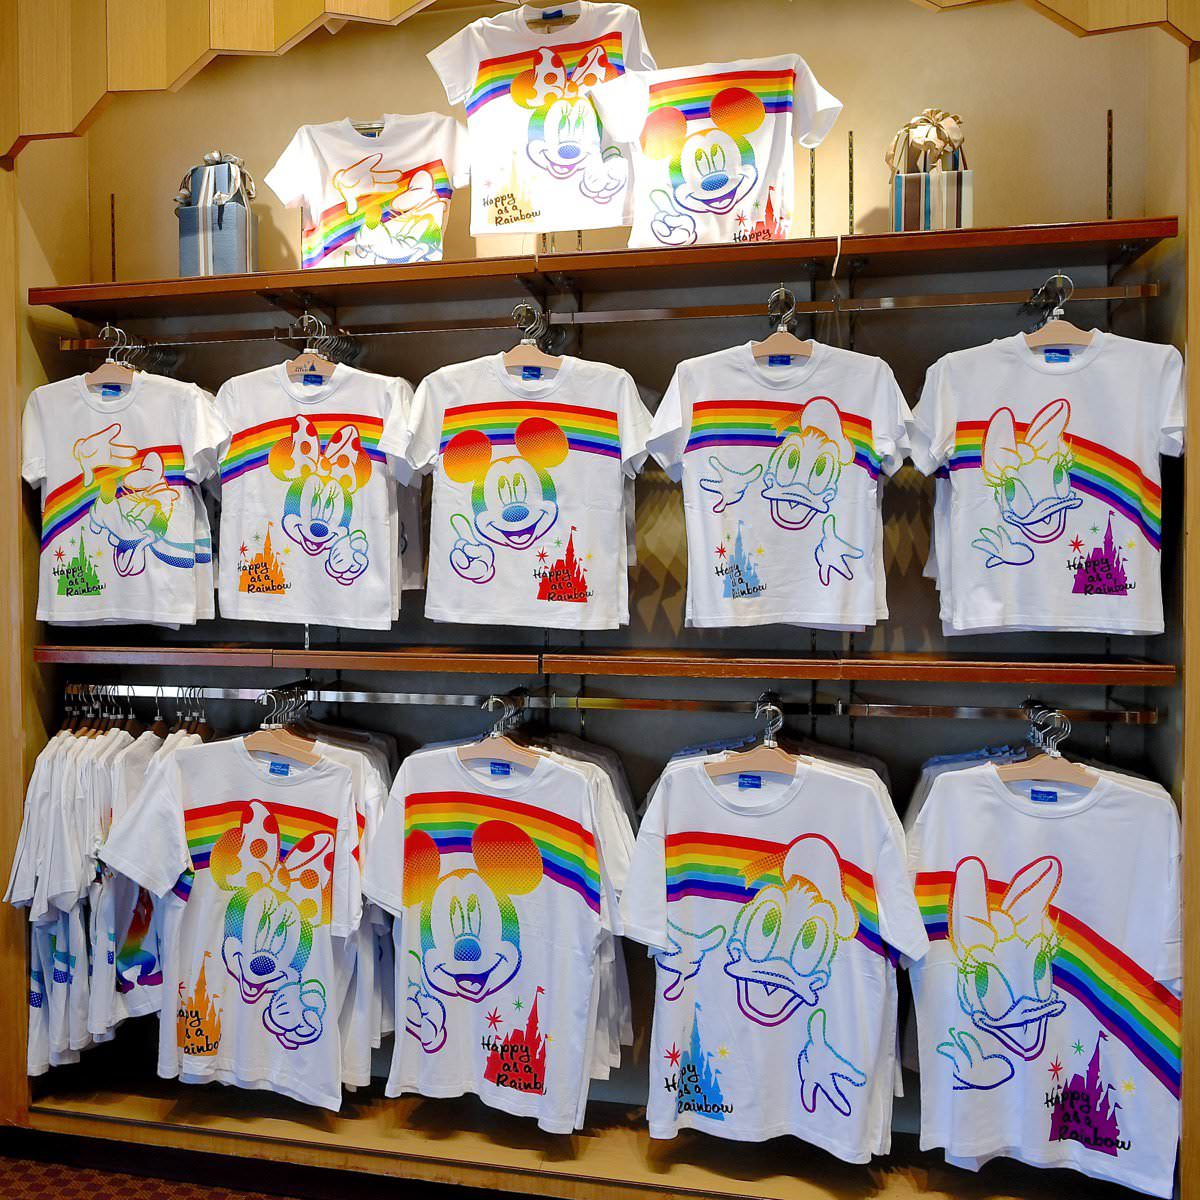 友達で揃えて虹を架けよう 東京ディズニーランド レインボーtシャツ